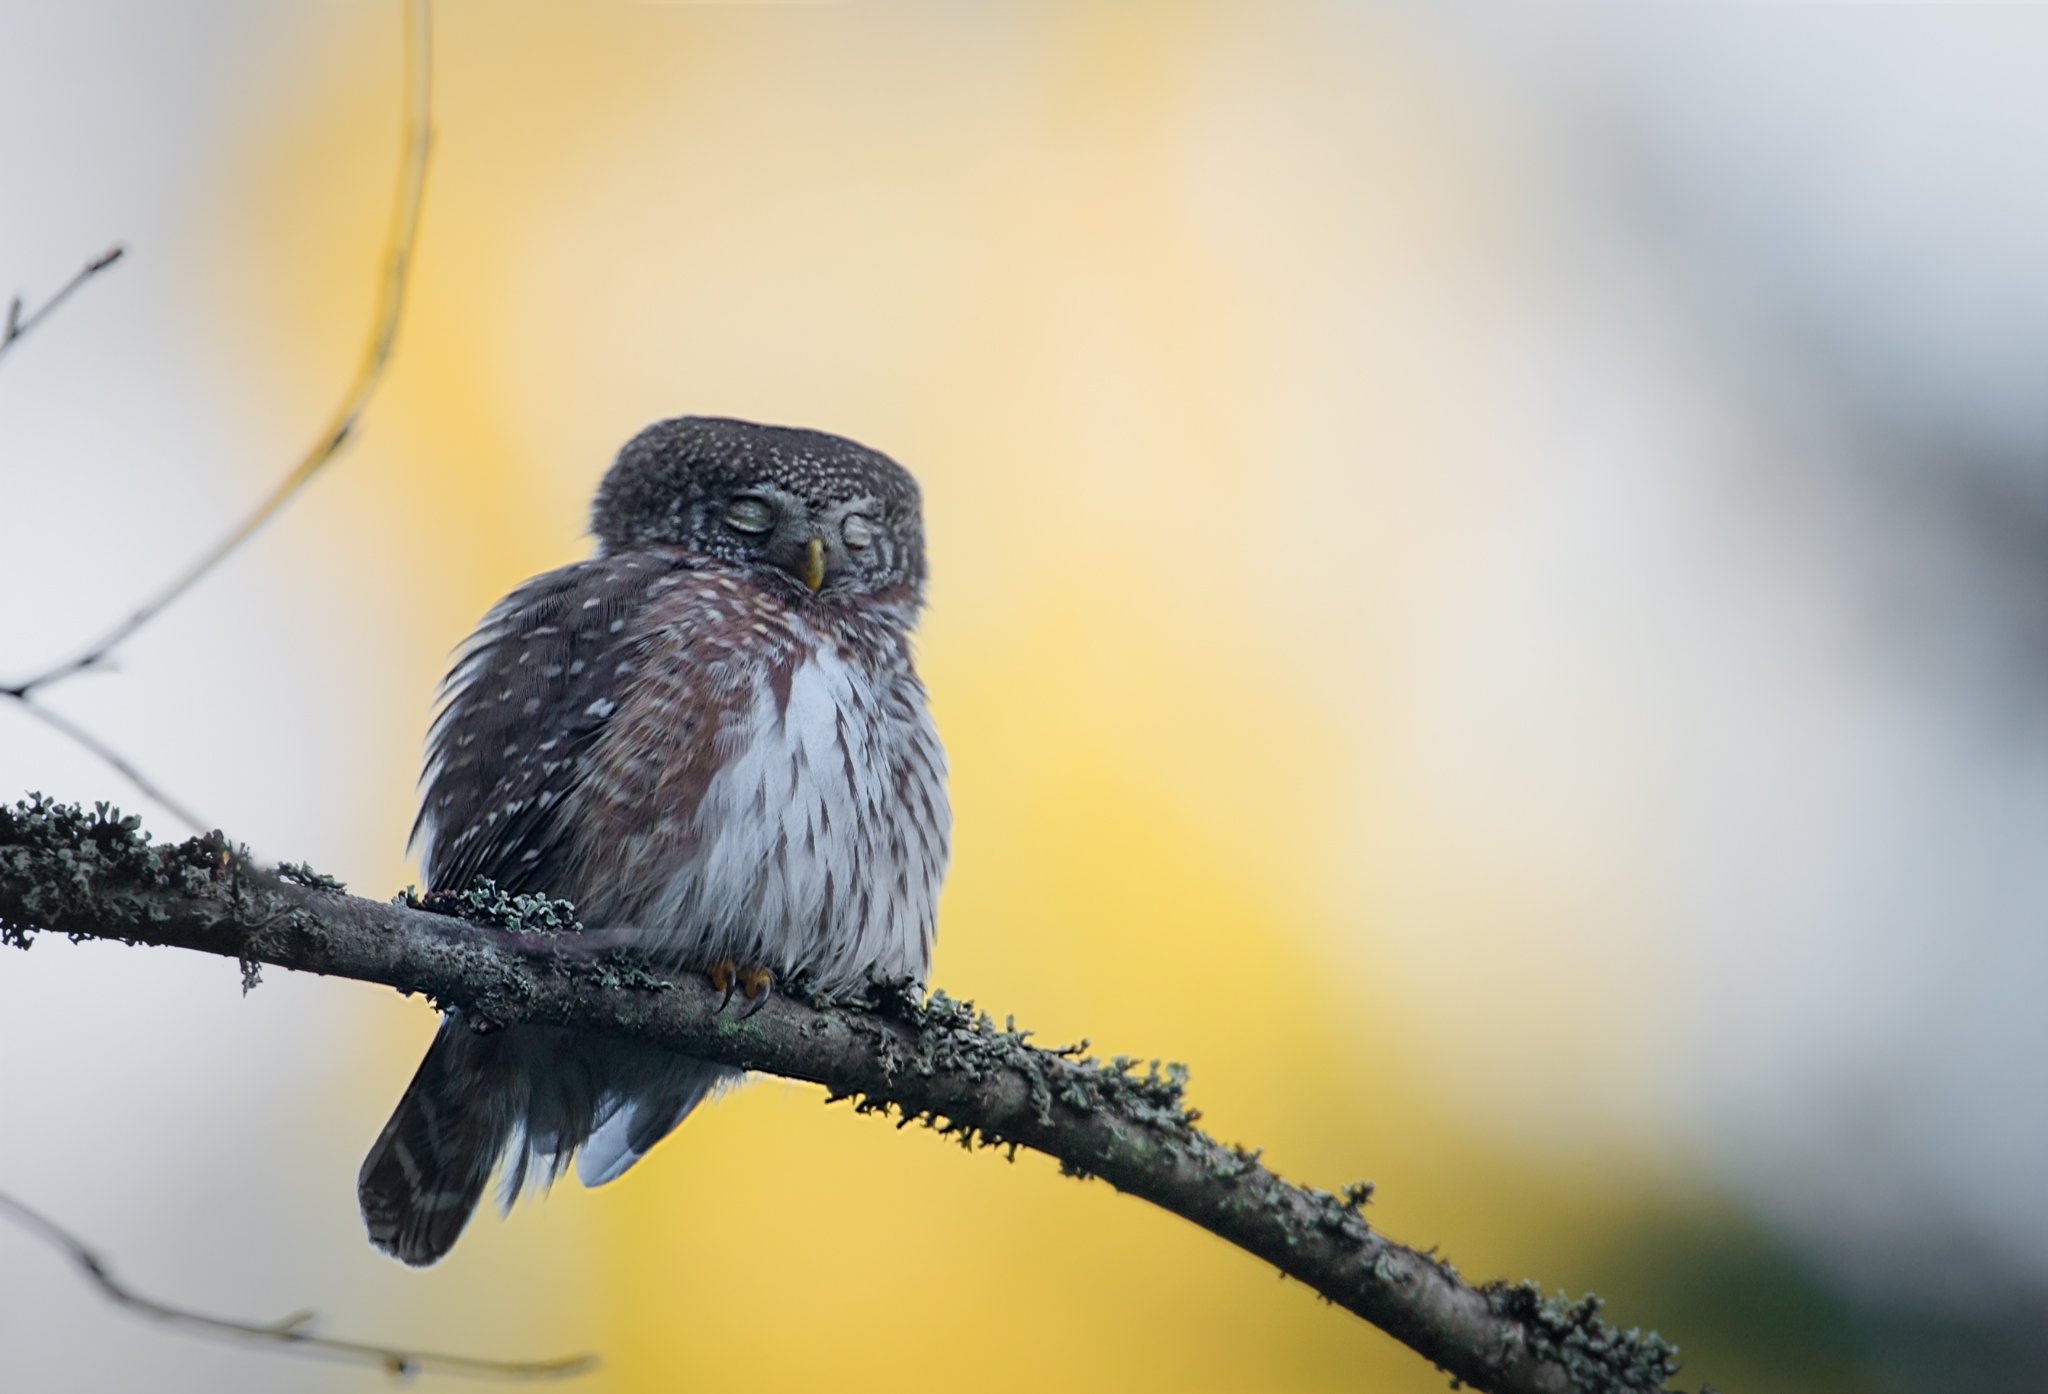 pygmy owl, finland, Jarkko Järvinen